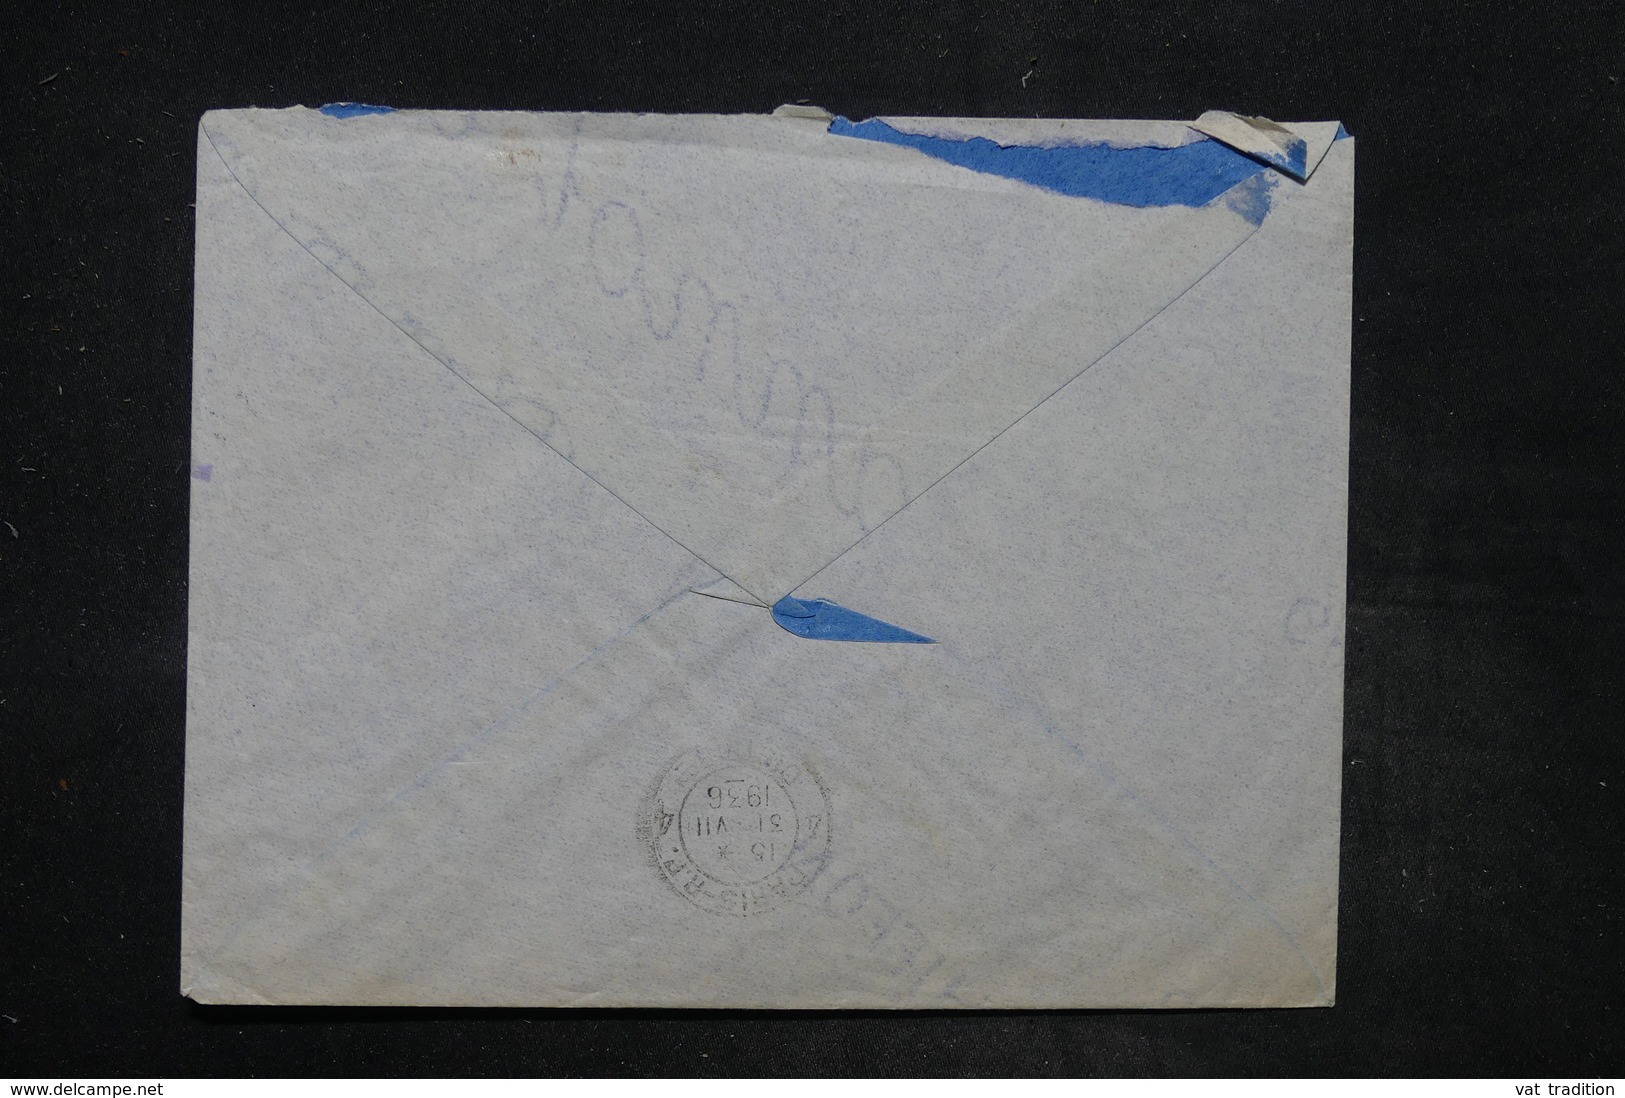 NIGER - Enveloppe Commerciale De Niamey Pour Paris En 1936 , Affranchissement Plaisant - L 26677 - Cartas & Documentos